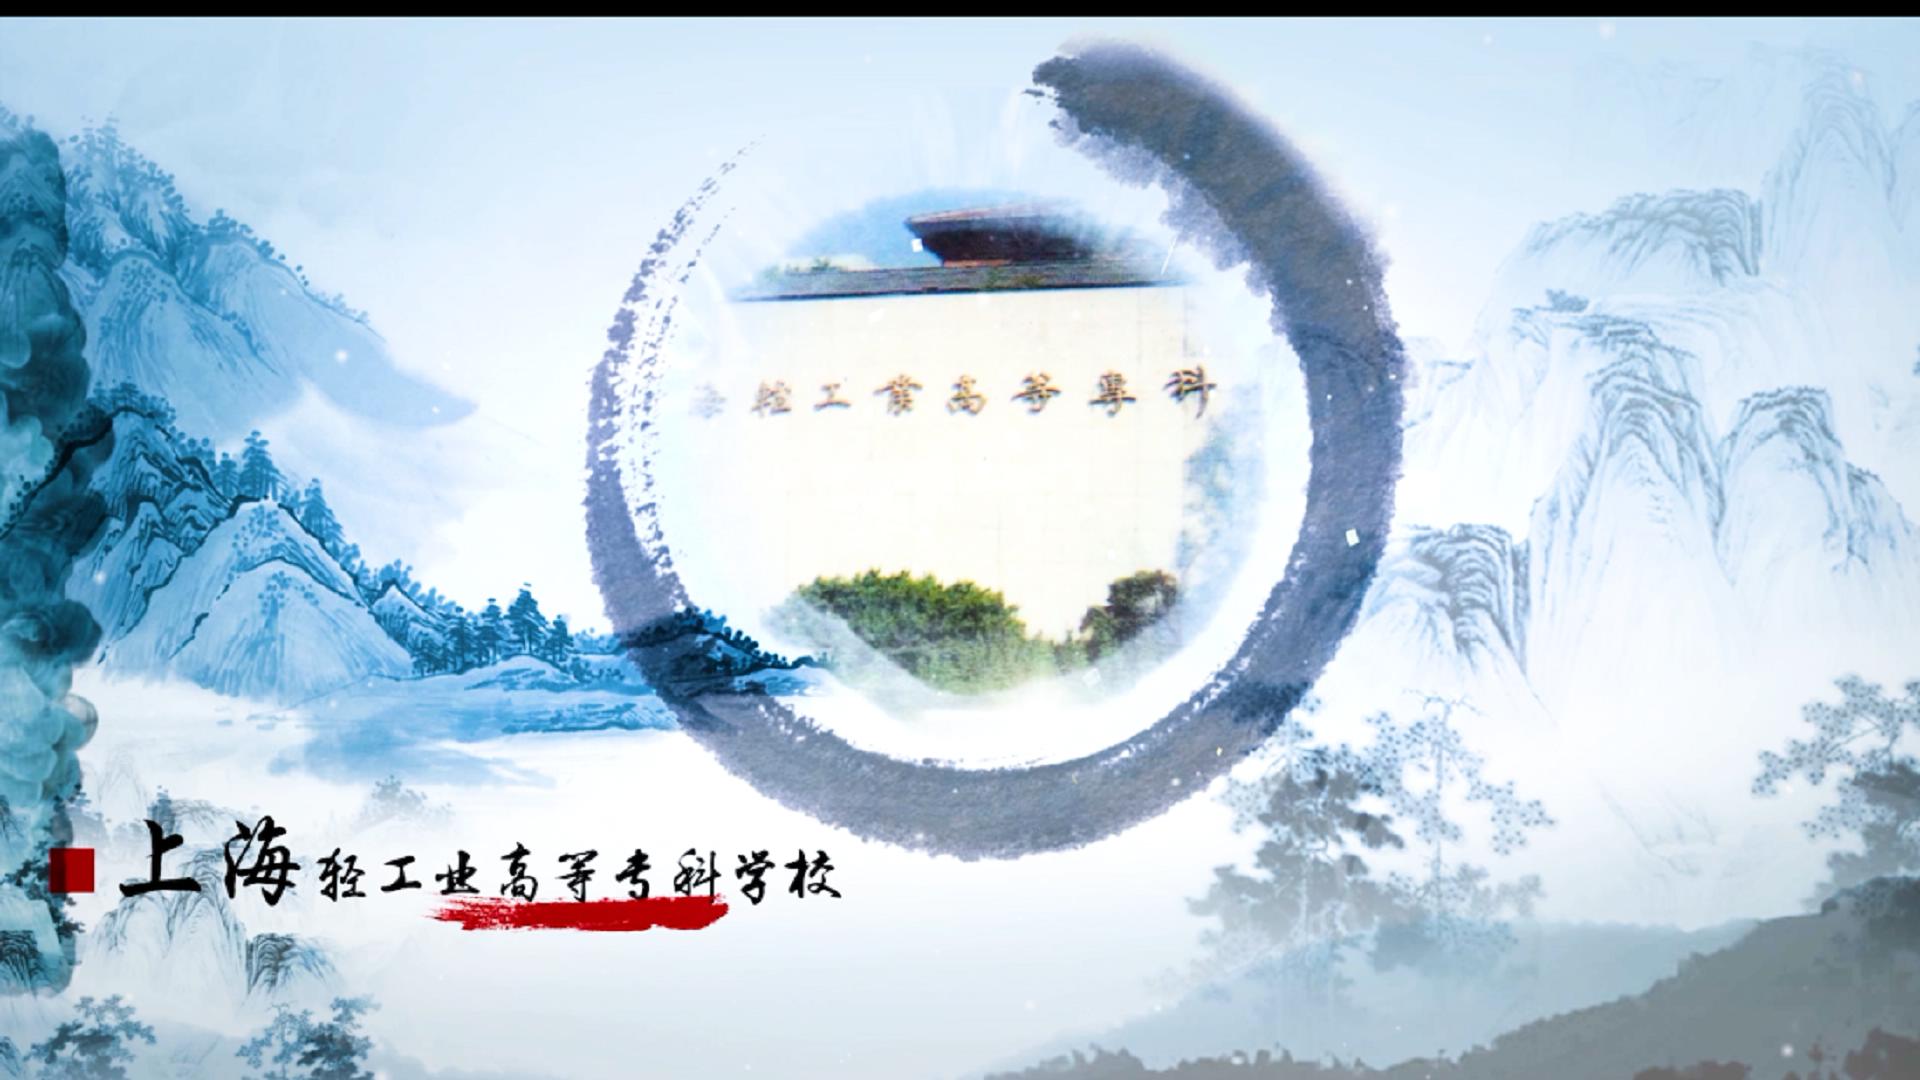 理工大学真空管道悬浮列车 宣传片 上海学校宣传片拍摄制作图片